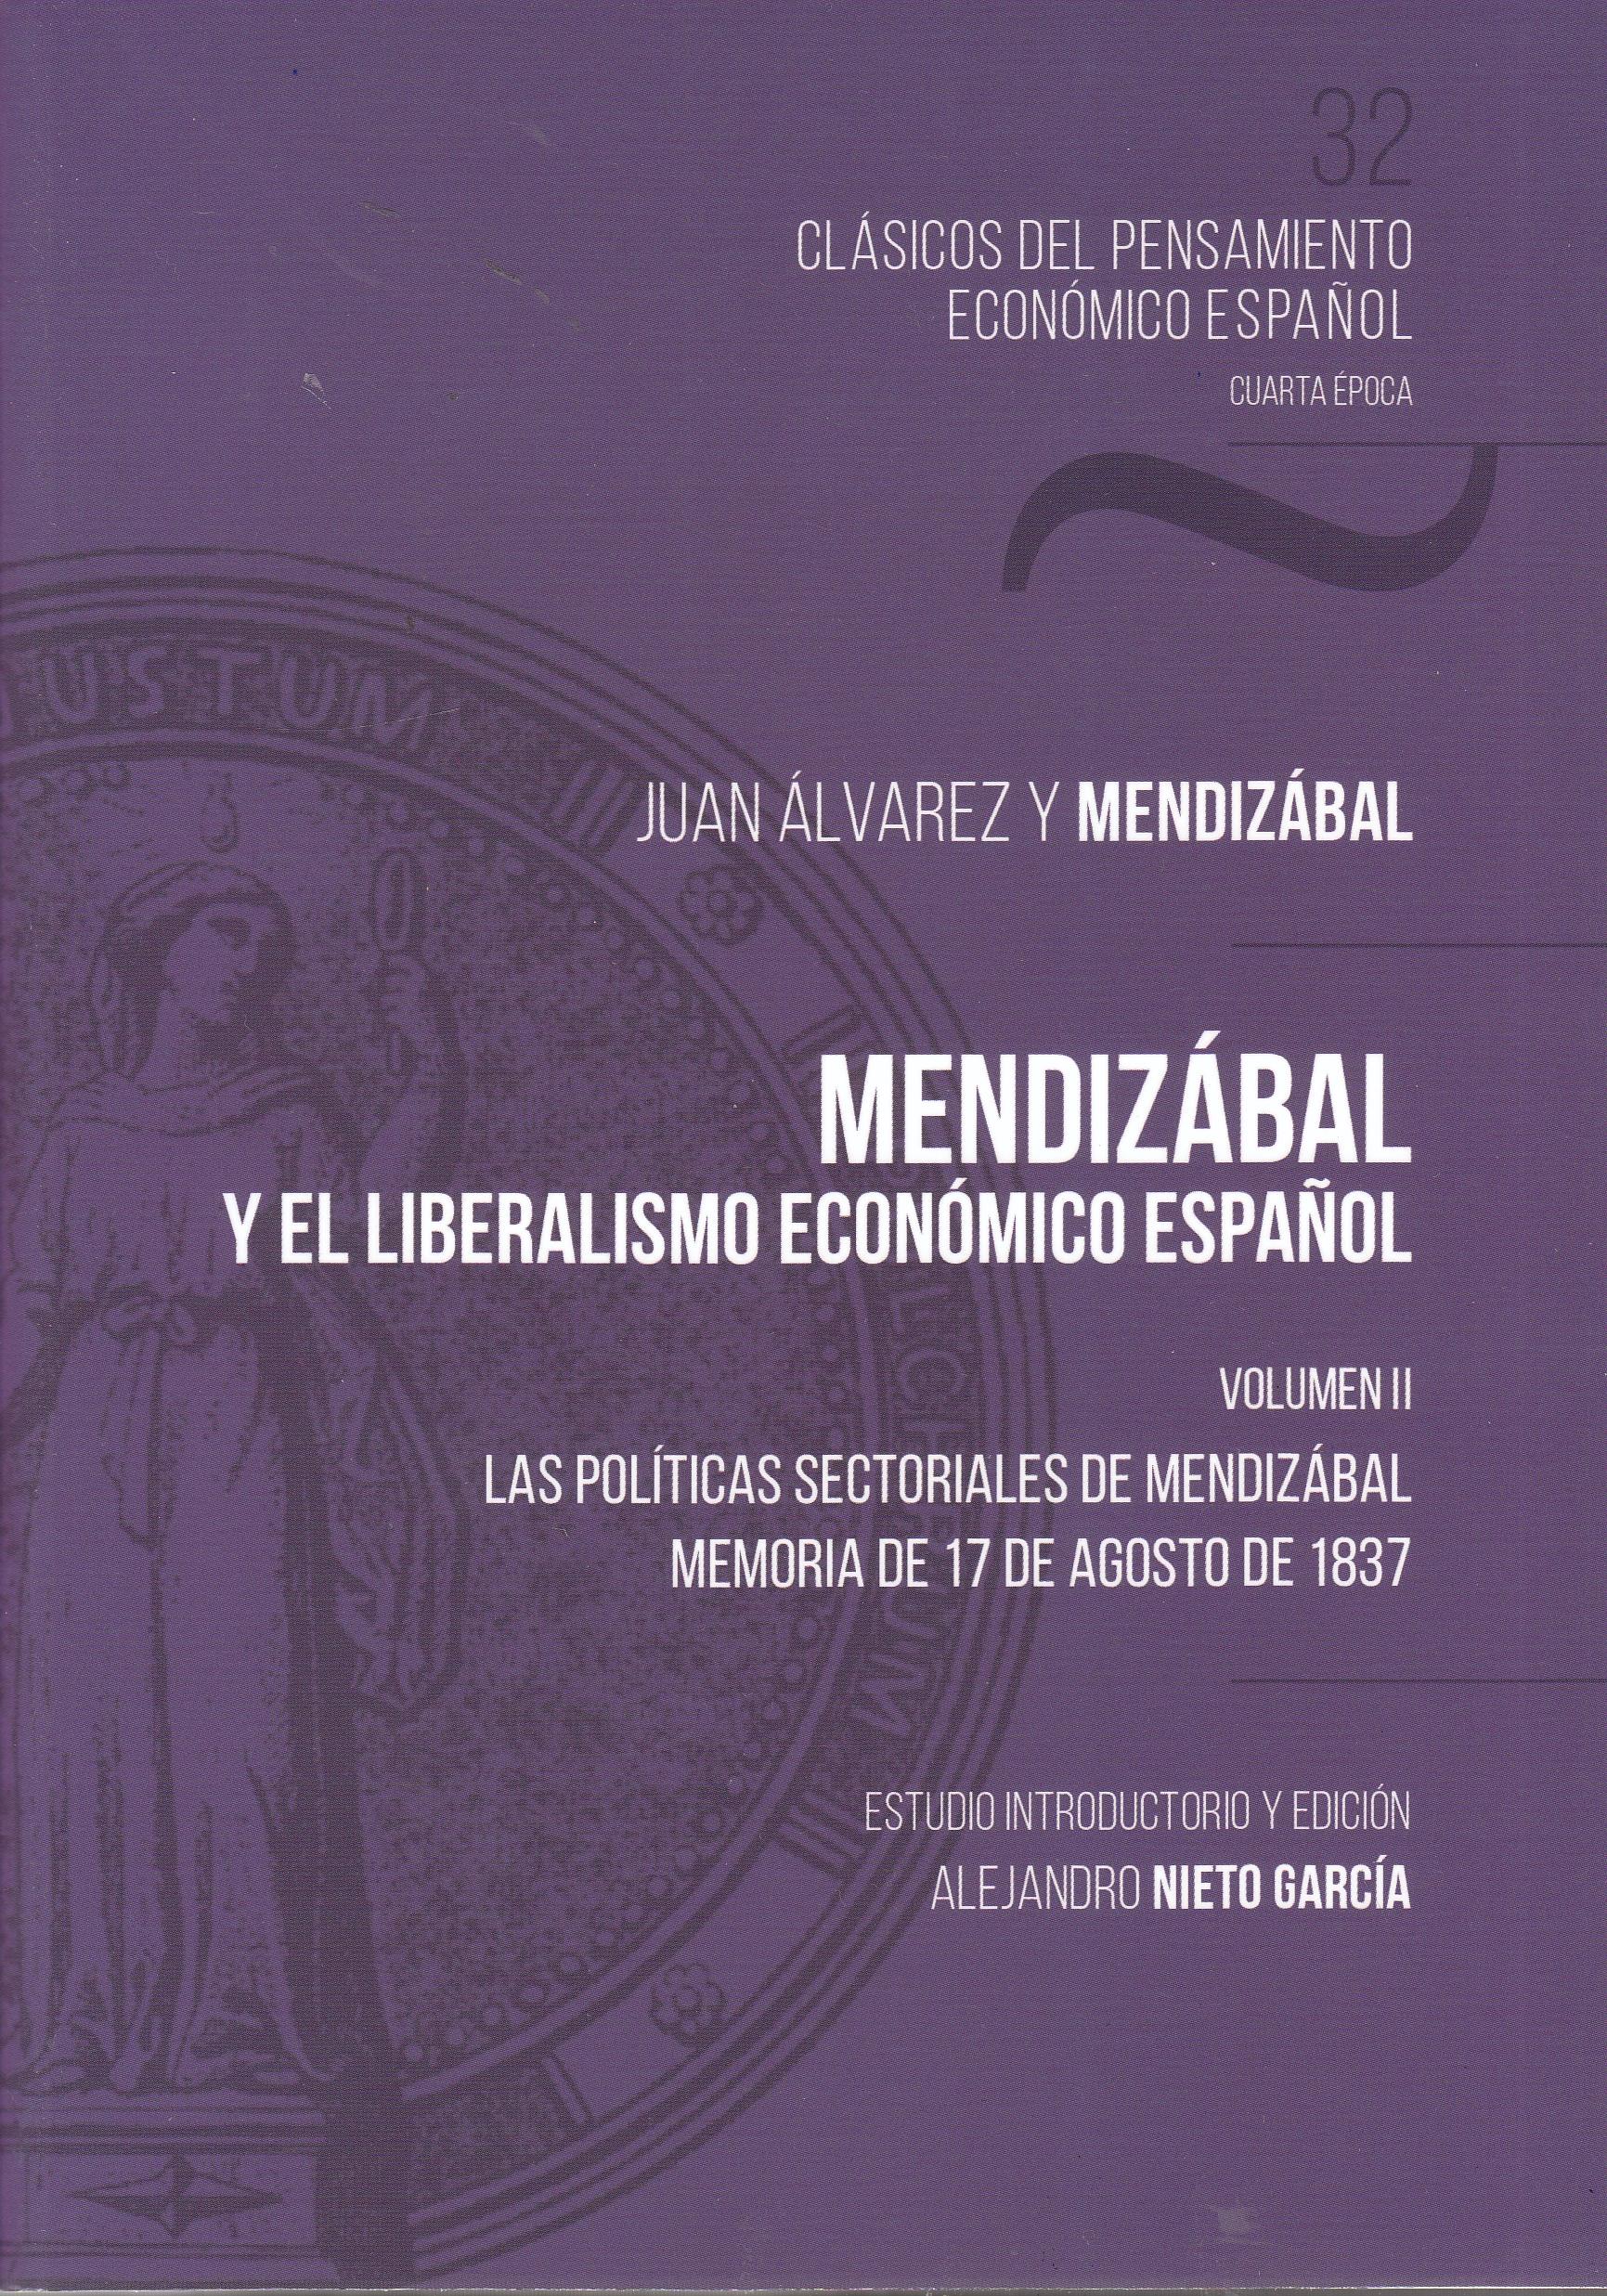 Mendizábal y el liberalismo económico español Vol.II "Las políticas sectoriales de Mendizábal. Memoria de 17 de agosto de 1837"